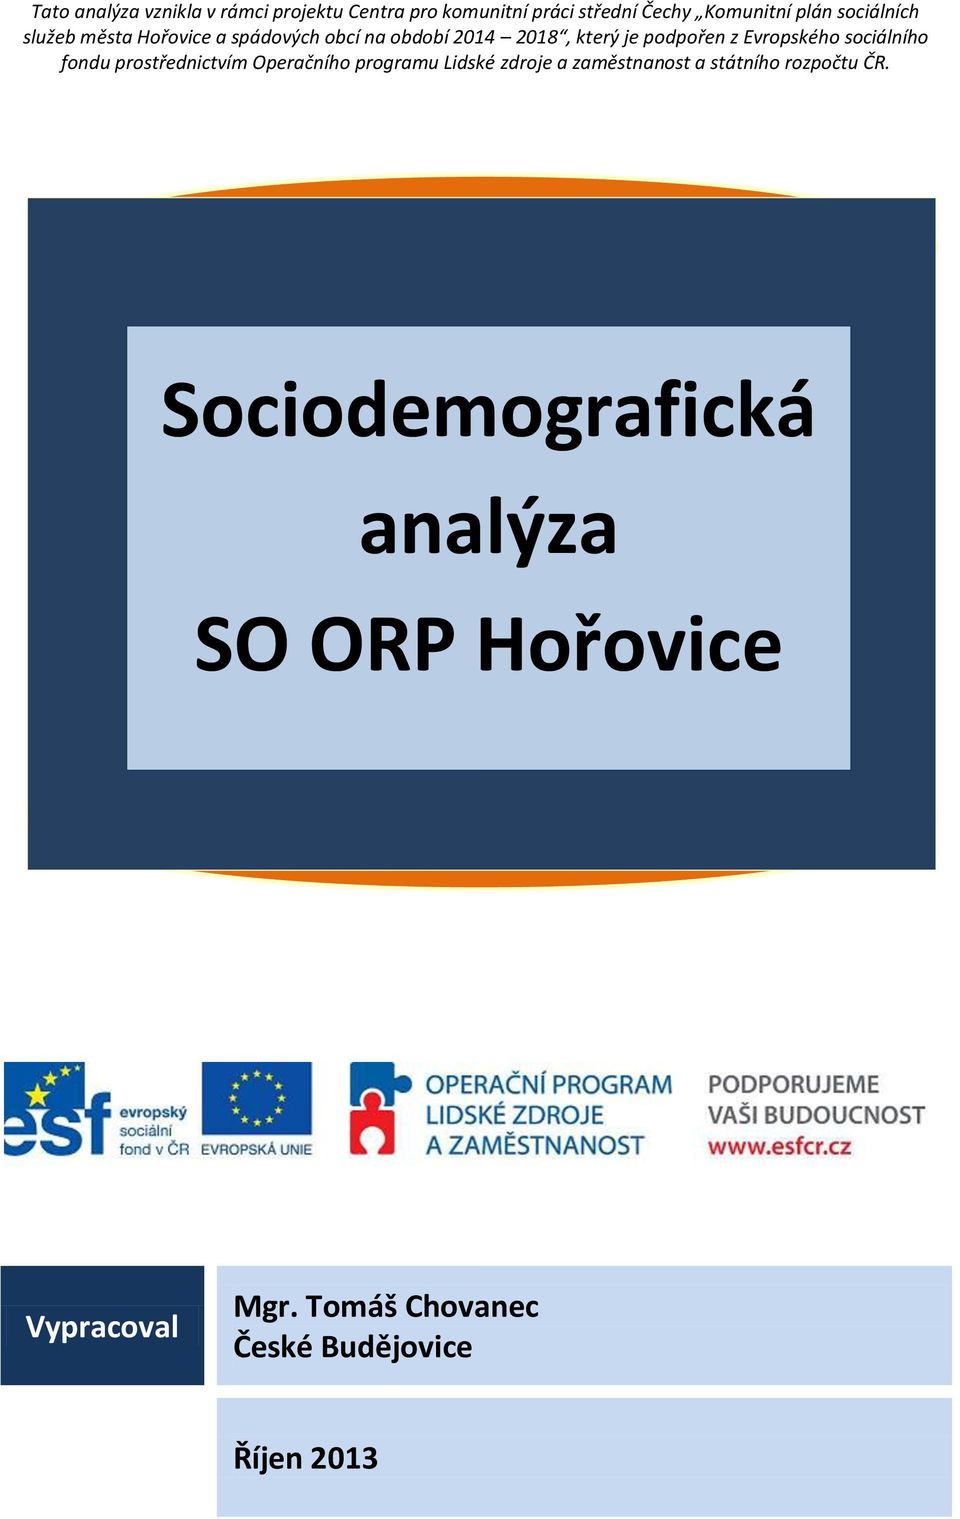 Evropského sociálního fondu prostřednictvím Operačního programu Lidské zdroje a zaměstnanost a